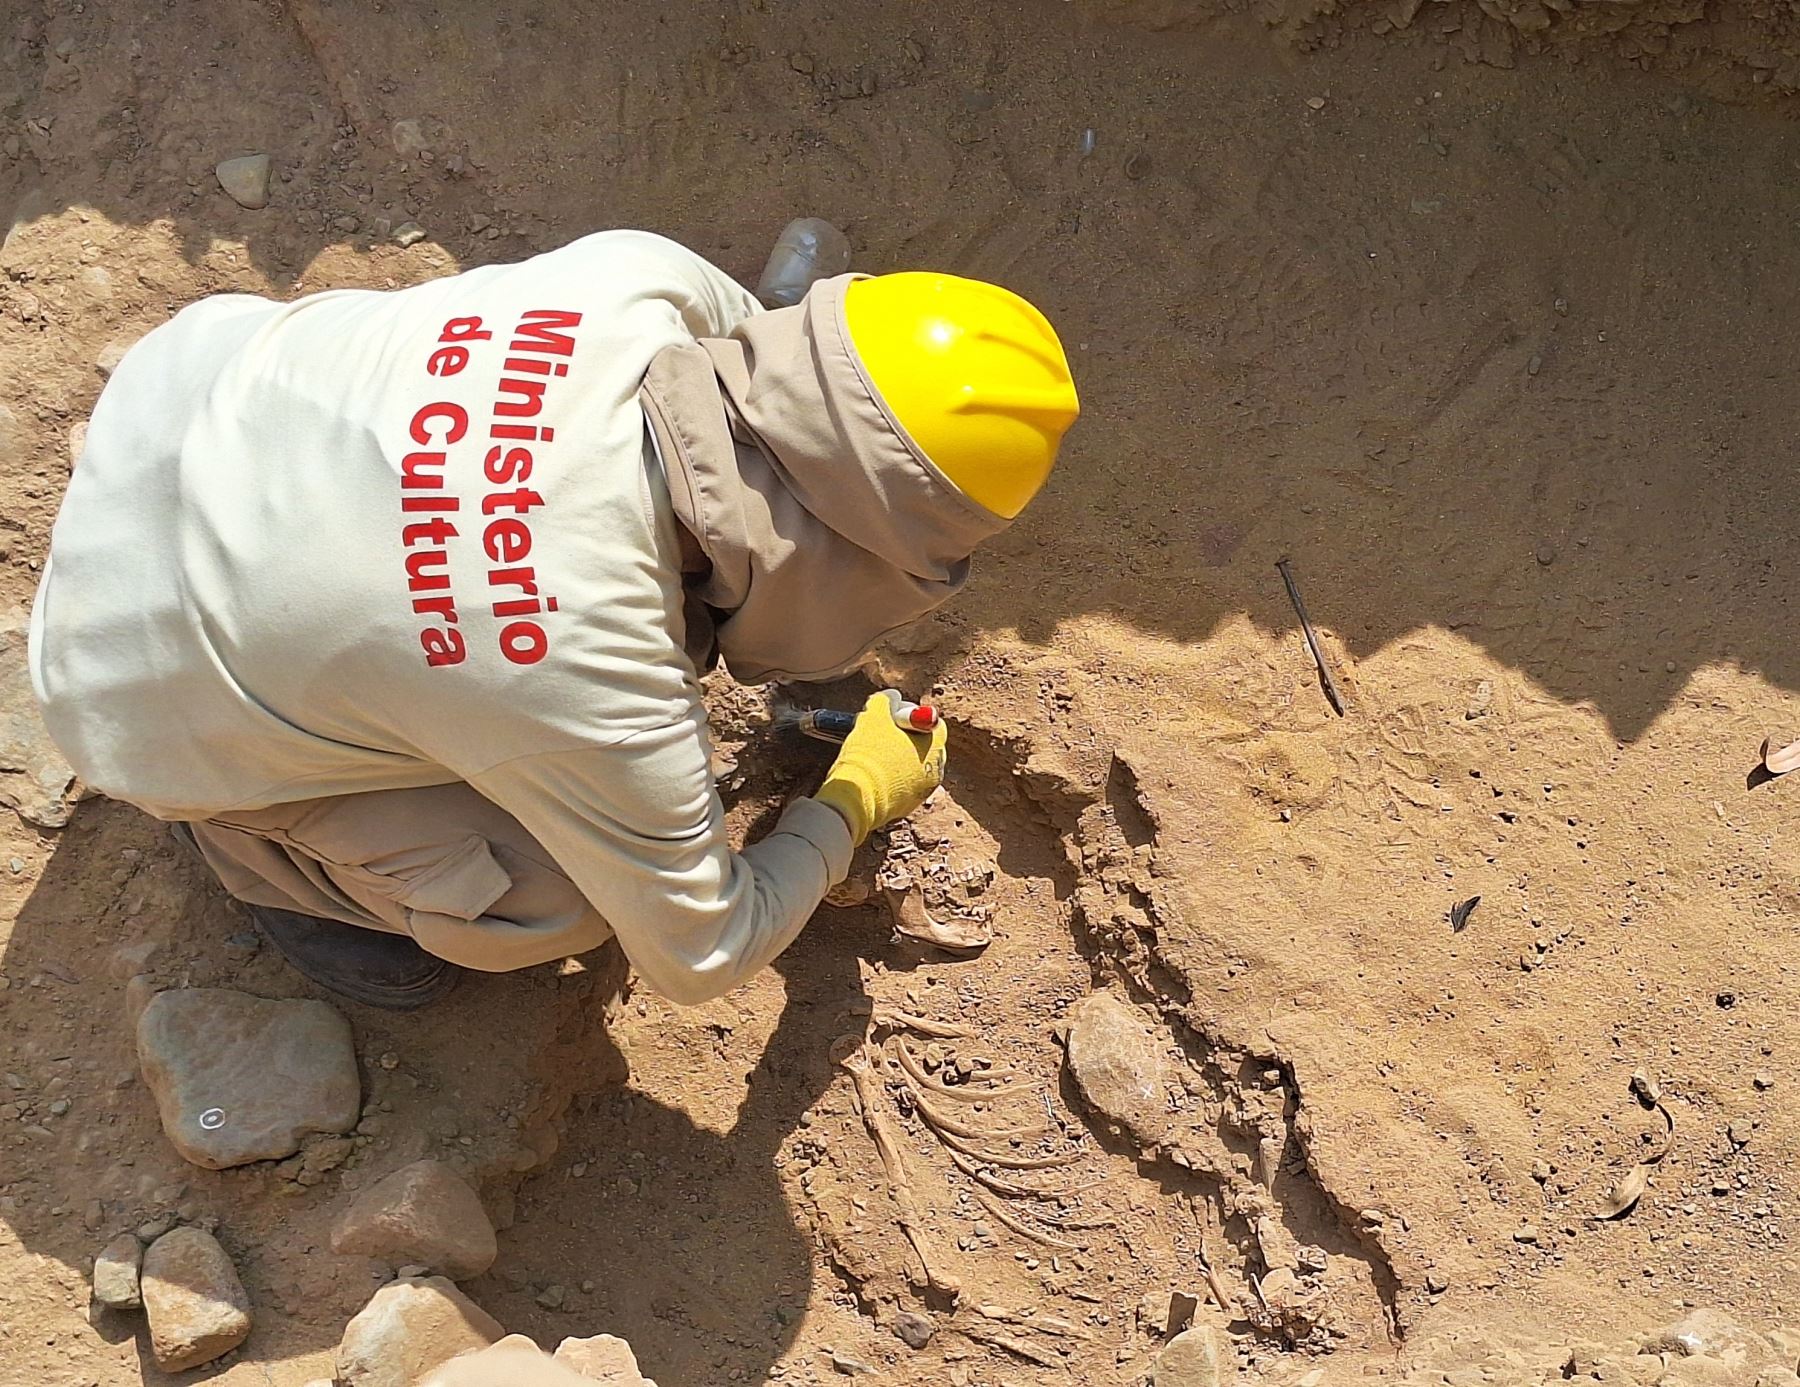 Impresionante hallazgo arqueológico en Chan Chan. Investigadores peruanos descubrieron restos óseos de 11 individuos, asociados a orejeras y otros vestigios al pie del muro perimetral del sector norte del conjunto amurallado Uthz An. Foto: Luis Puell